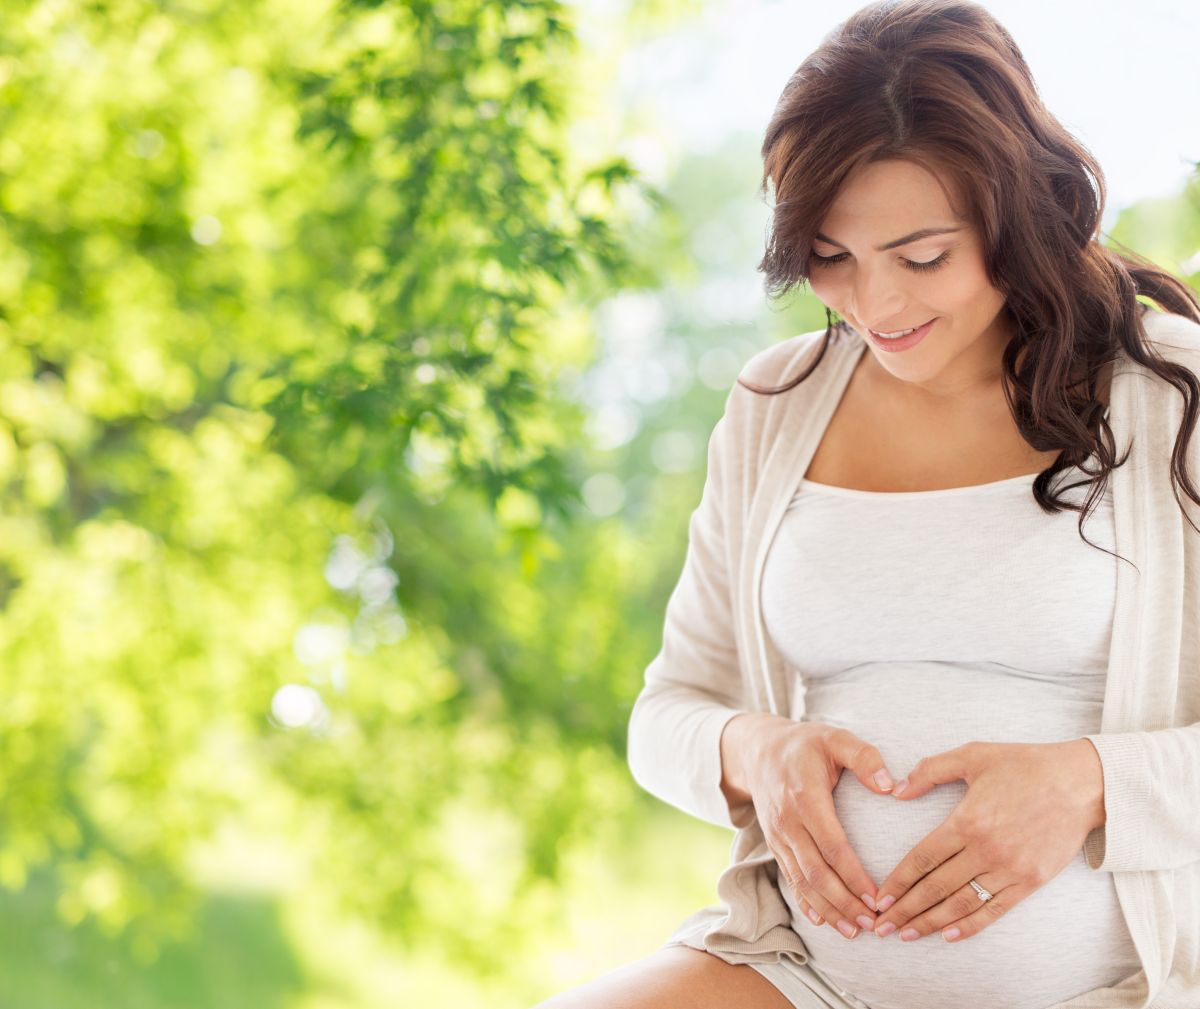 La acidez estomacal es un problema que afecta a muchas mujeres durante el embarazo.